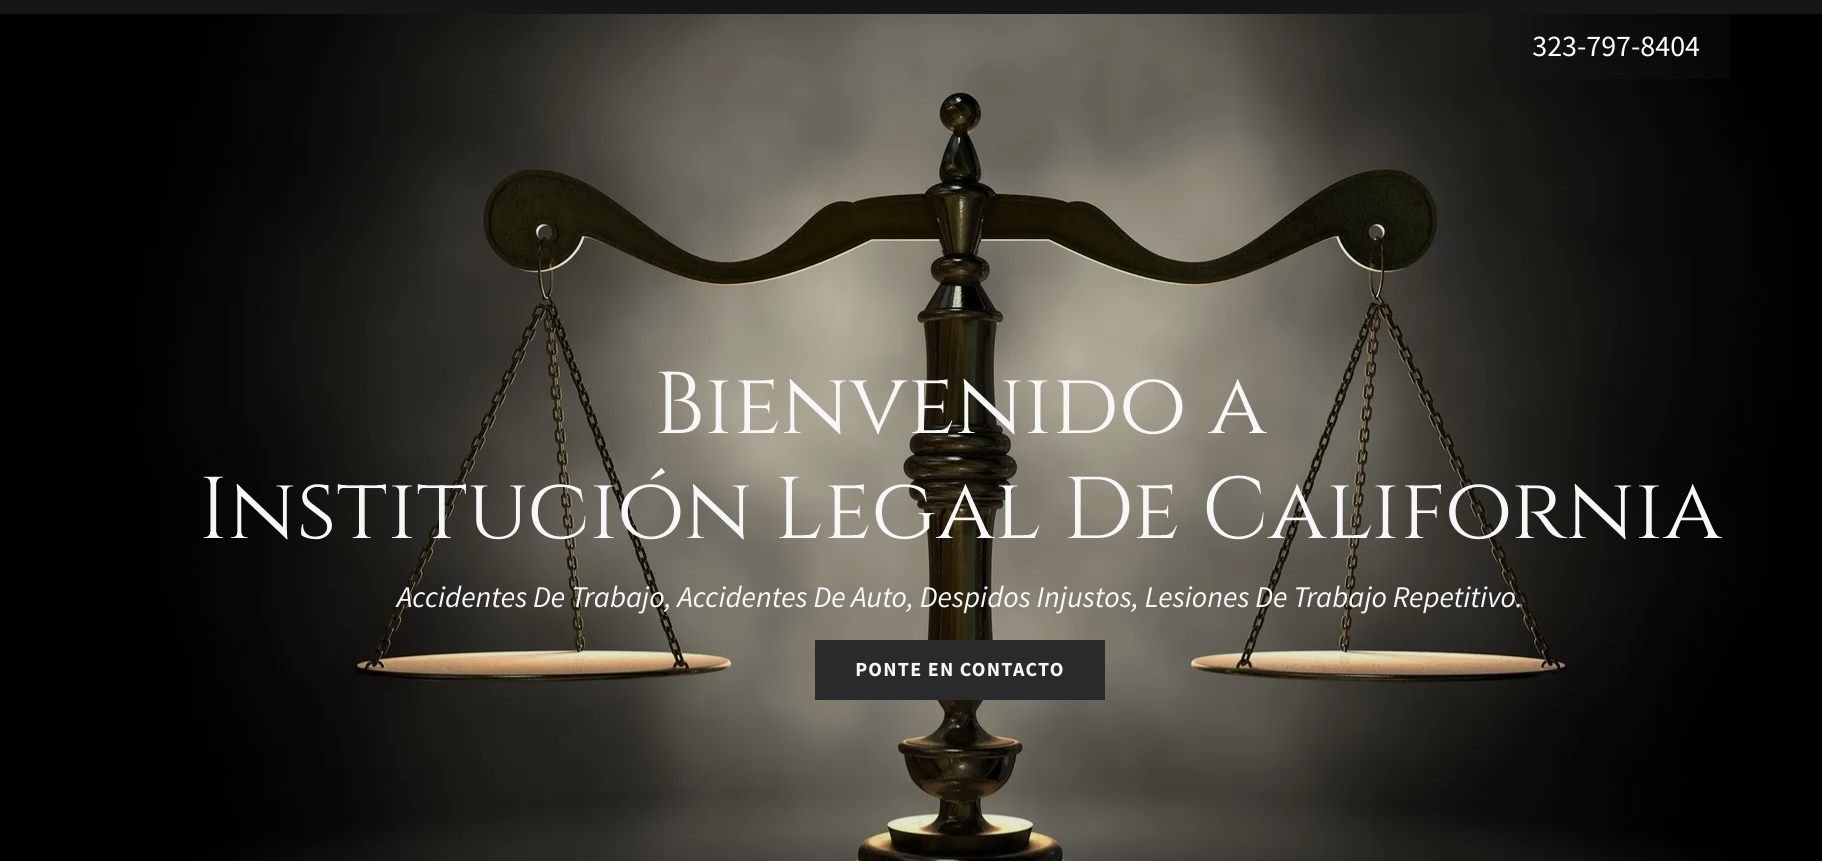 Institución Legal De California cover photo